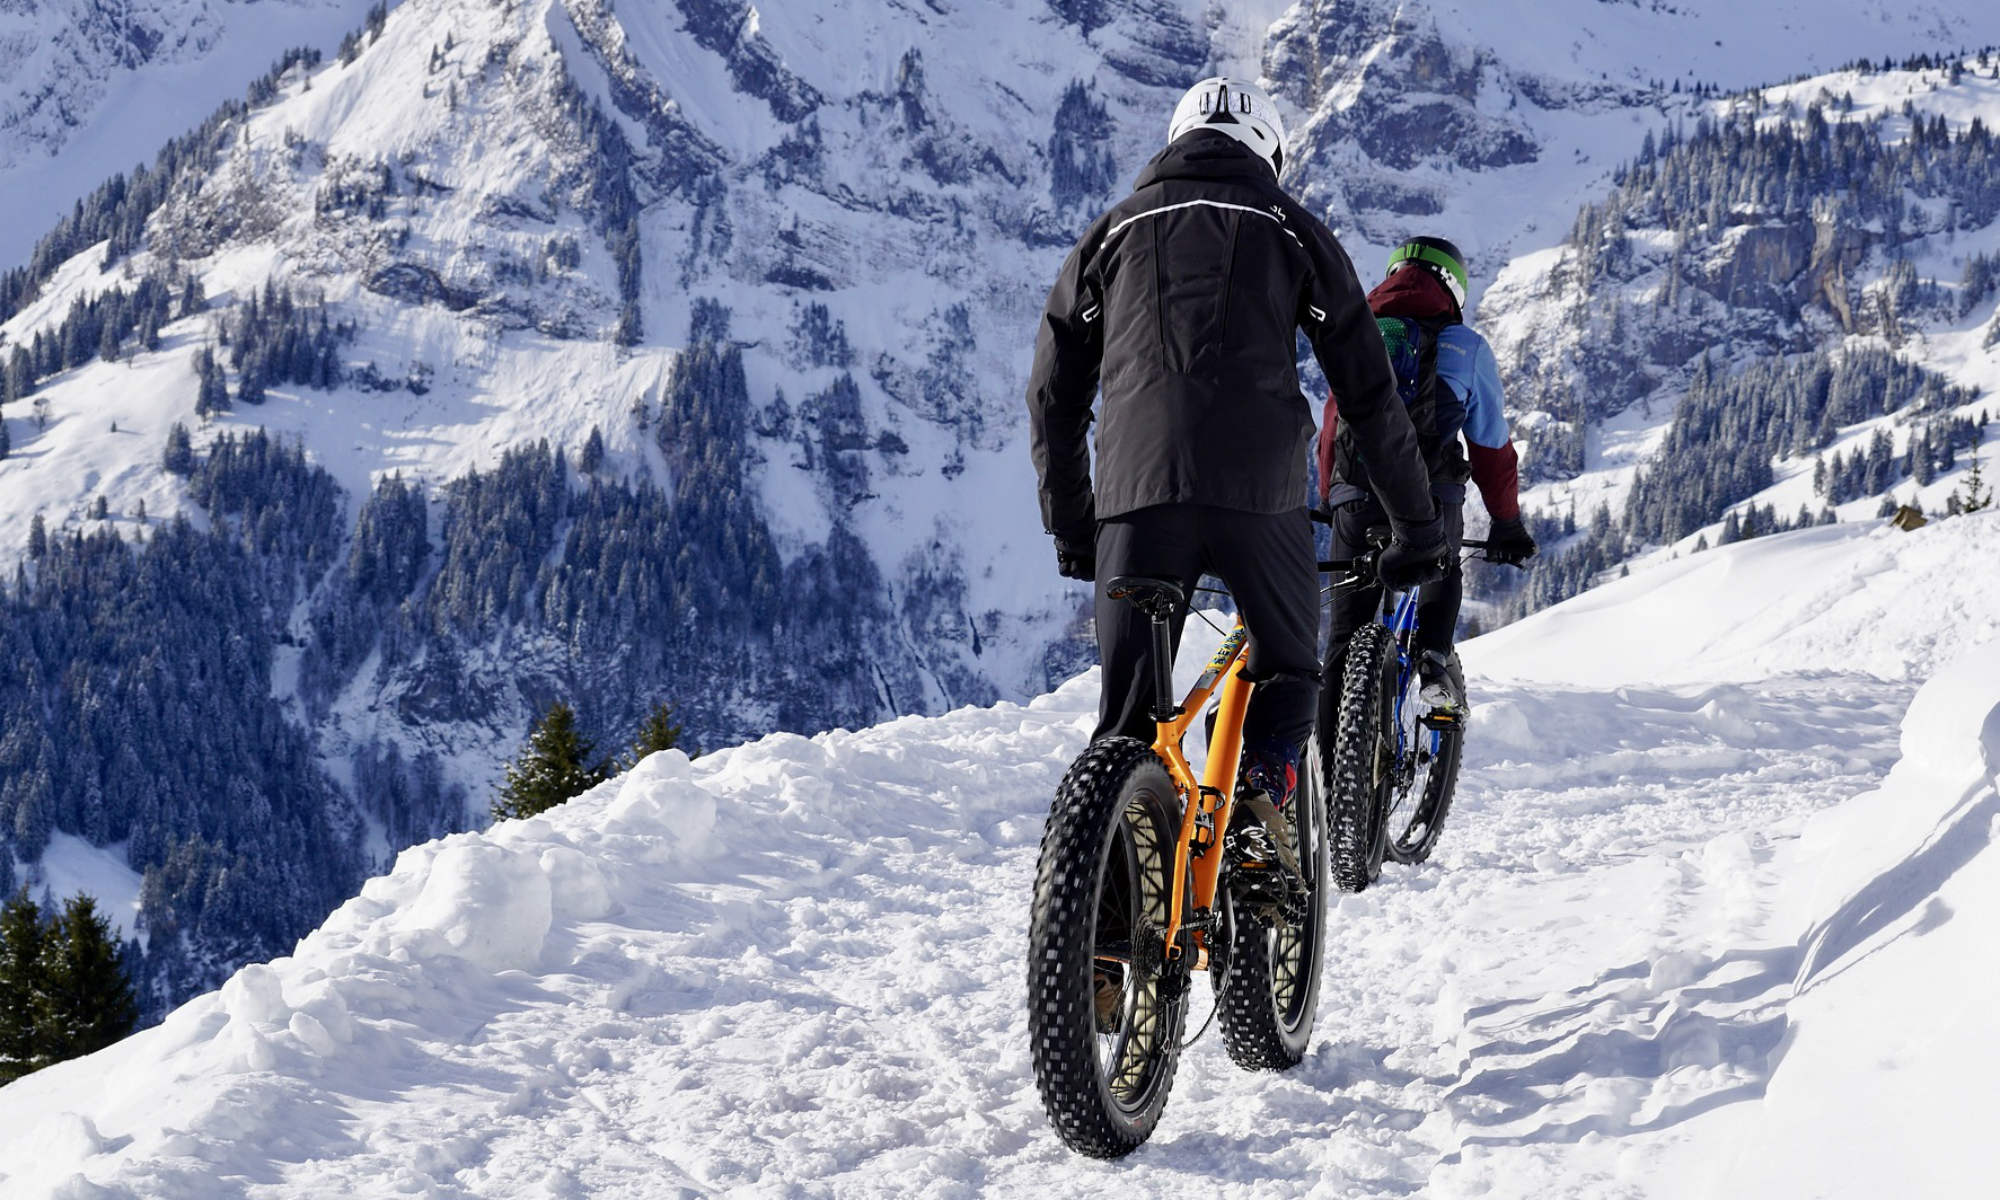 2 Radfahrer mit Fatbikes fahren durch den Schnee, im Hintergrund verschneite Berge.